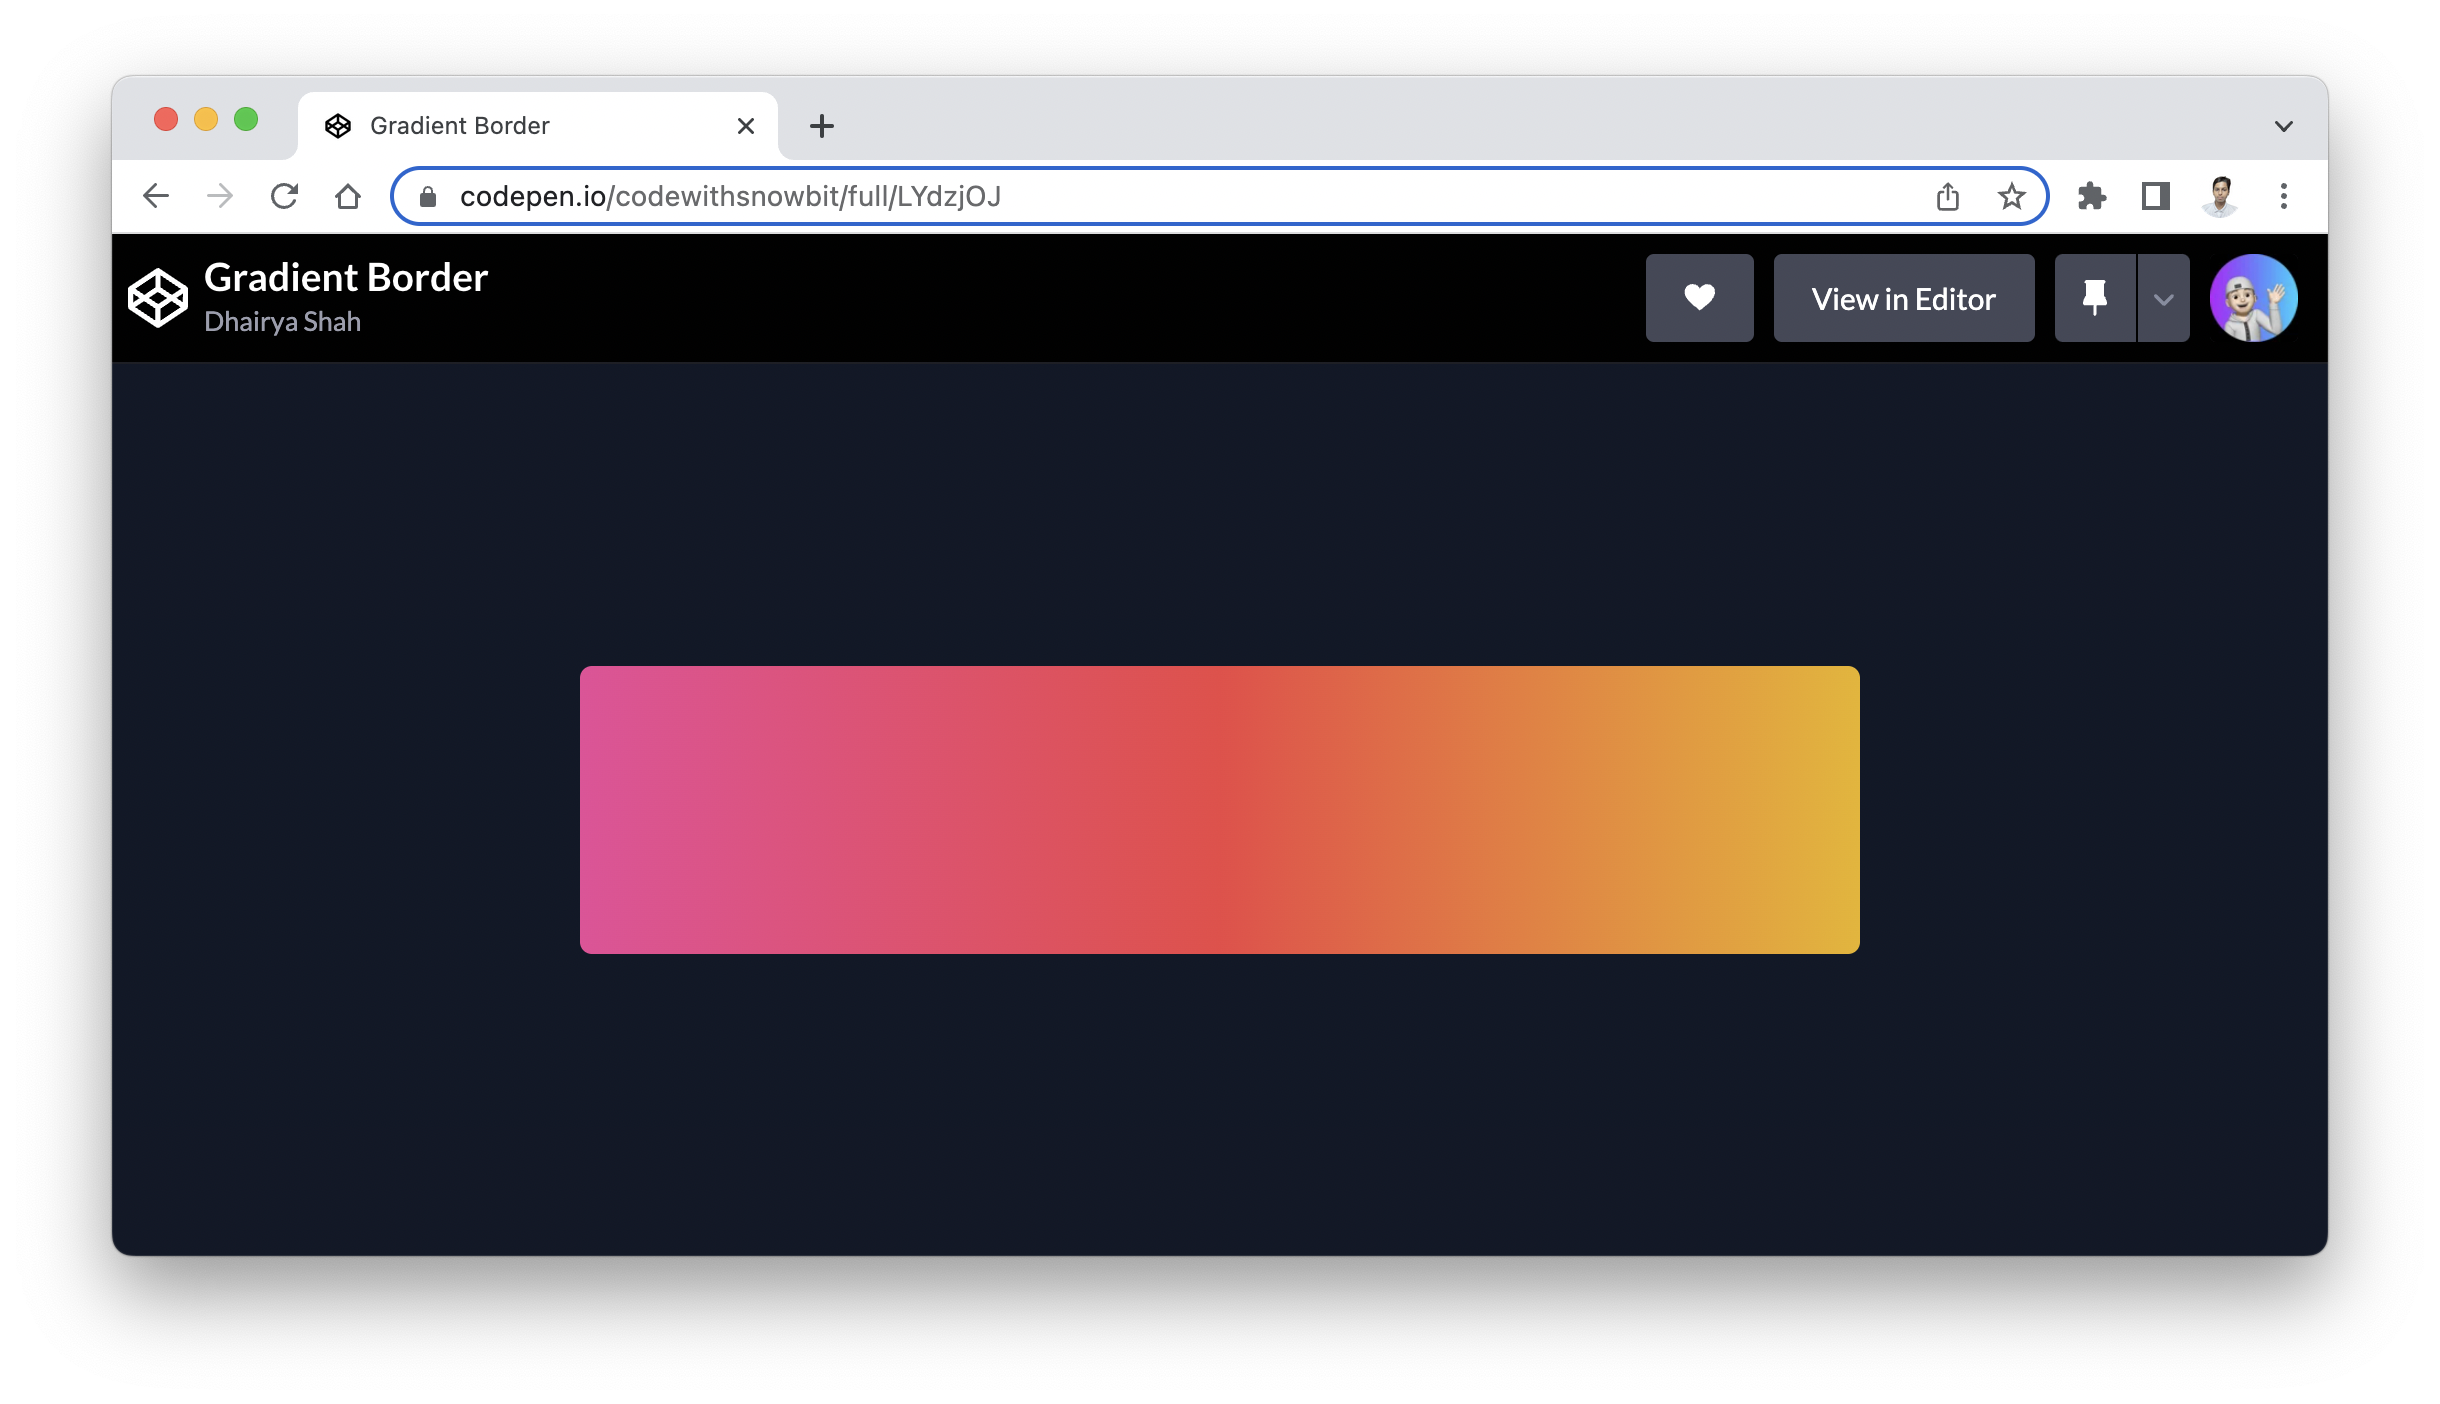 Tận dụng Gradient Border để thêm chút màu sắc tươi mới và thu hút sự chú ý cho các vị trí nhất định của trang web của bạn. Điểm nhấn mới sẽ giúp cho khách hàng dễ dàng nhận ra các thông tin quan trọng của bạn.